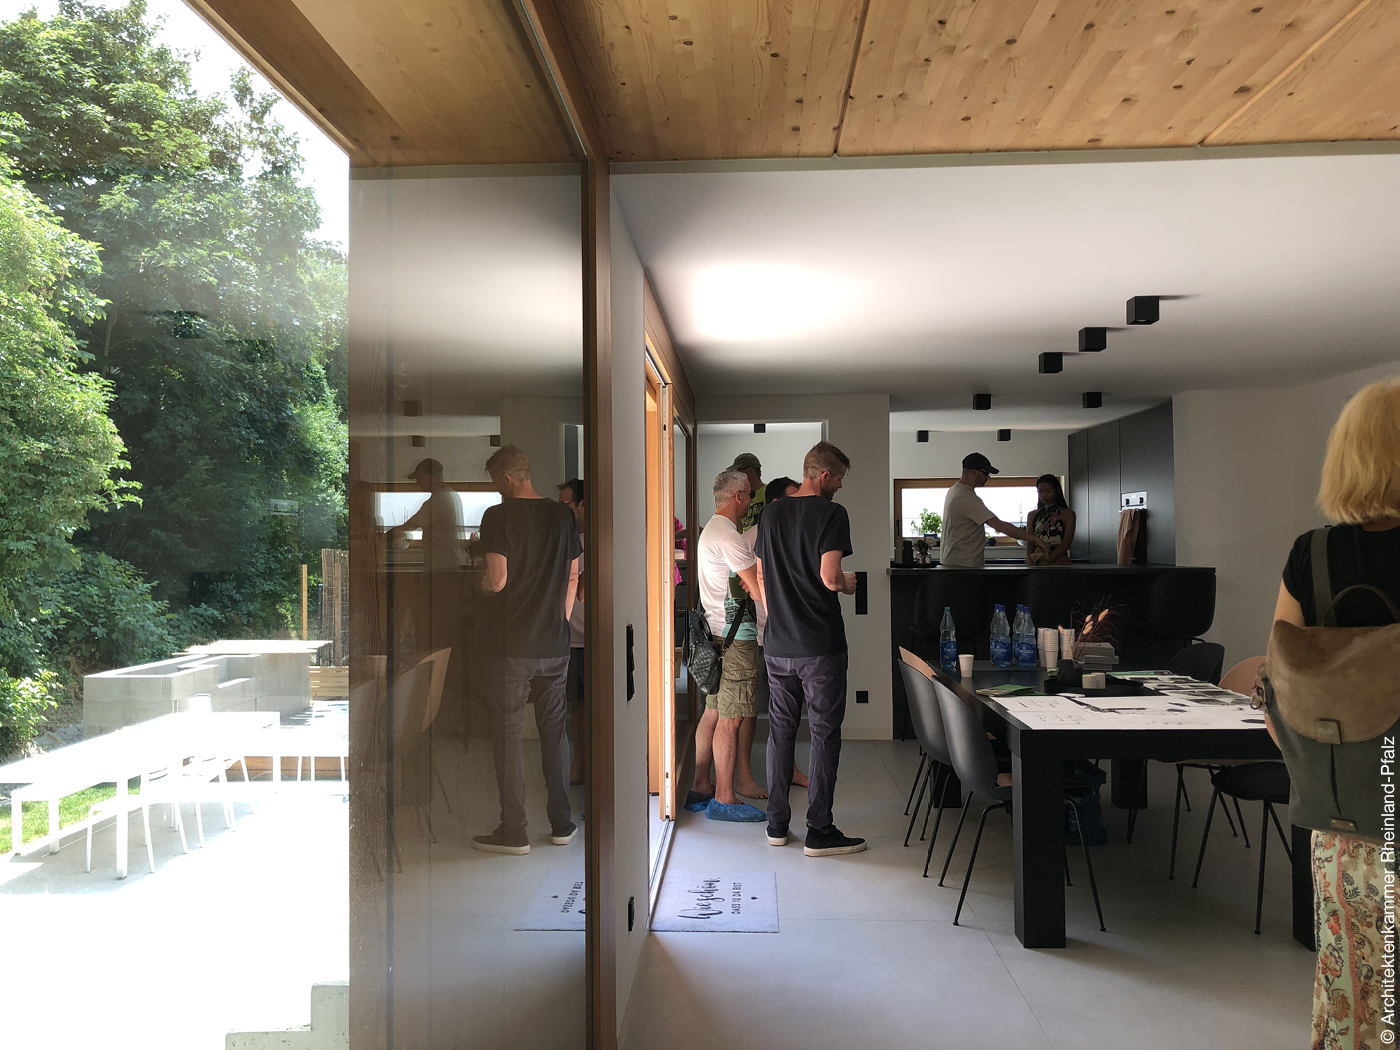 Besucher in einem Mainzer Wohnhaus am Tag der Architektur